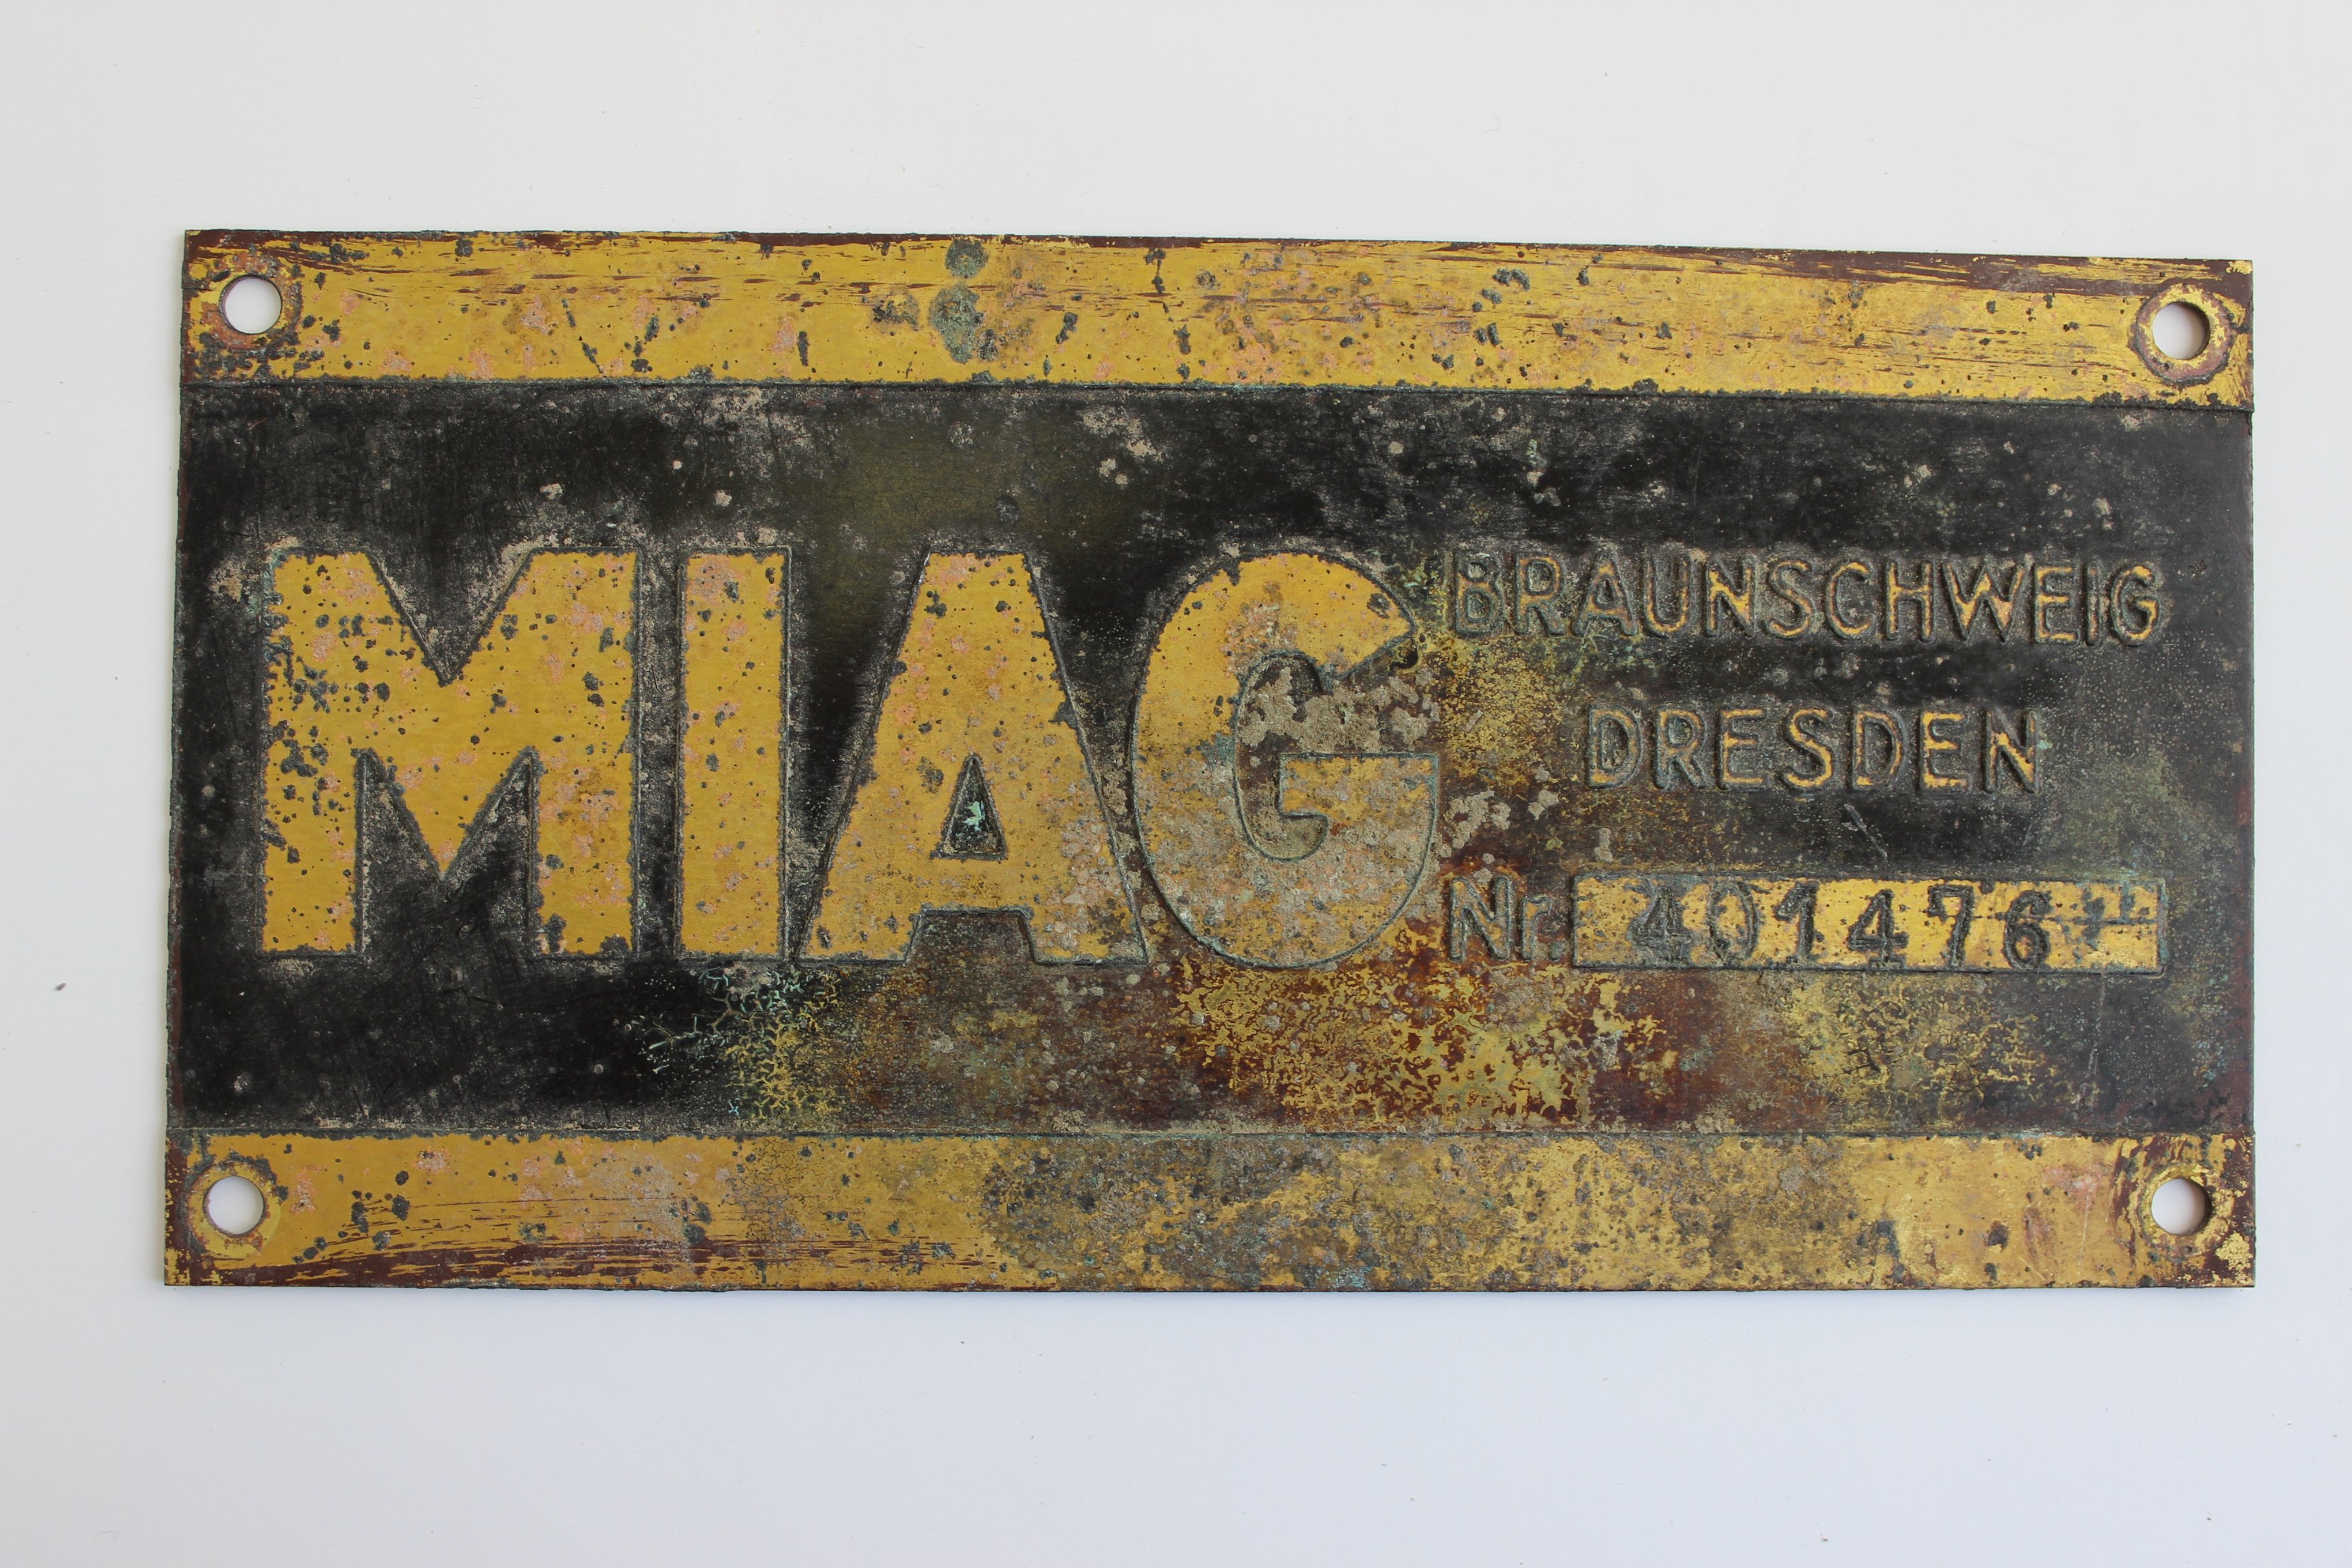 Firmenschild der MIAG, Nr. 401476 (Historische Mühle von Sanssouci CC BY-NC-SA)